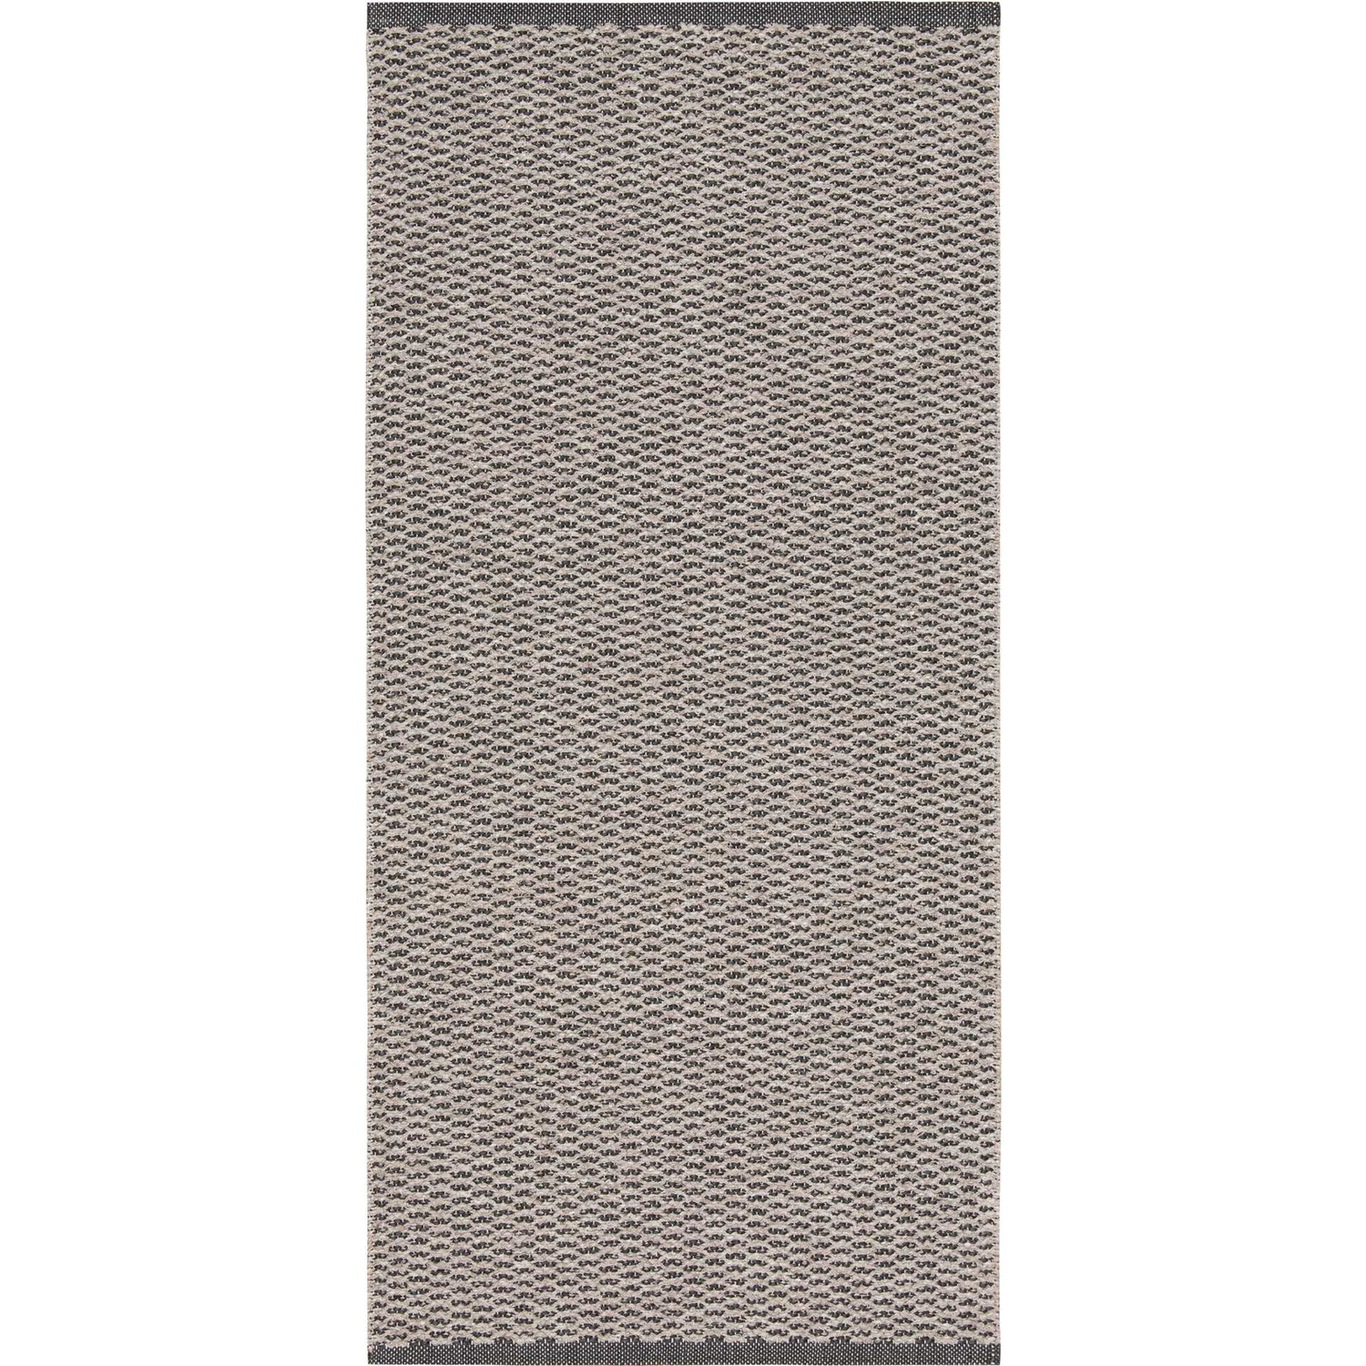 Mixed Signe Teppich 200x300 cm, Grau